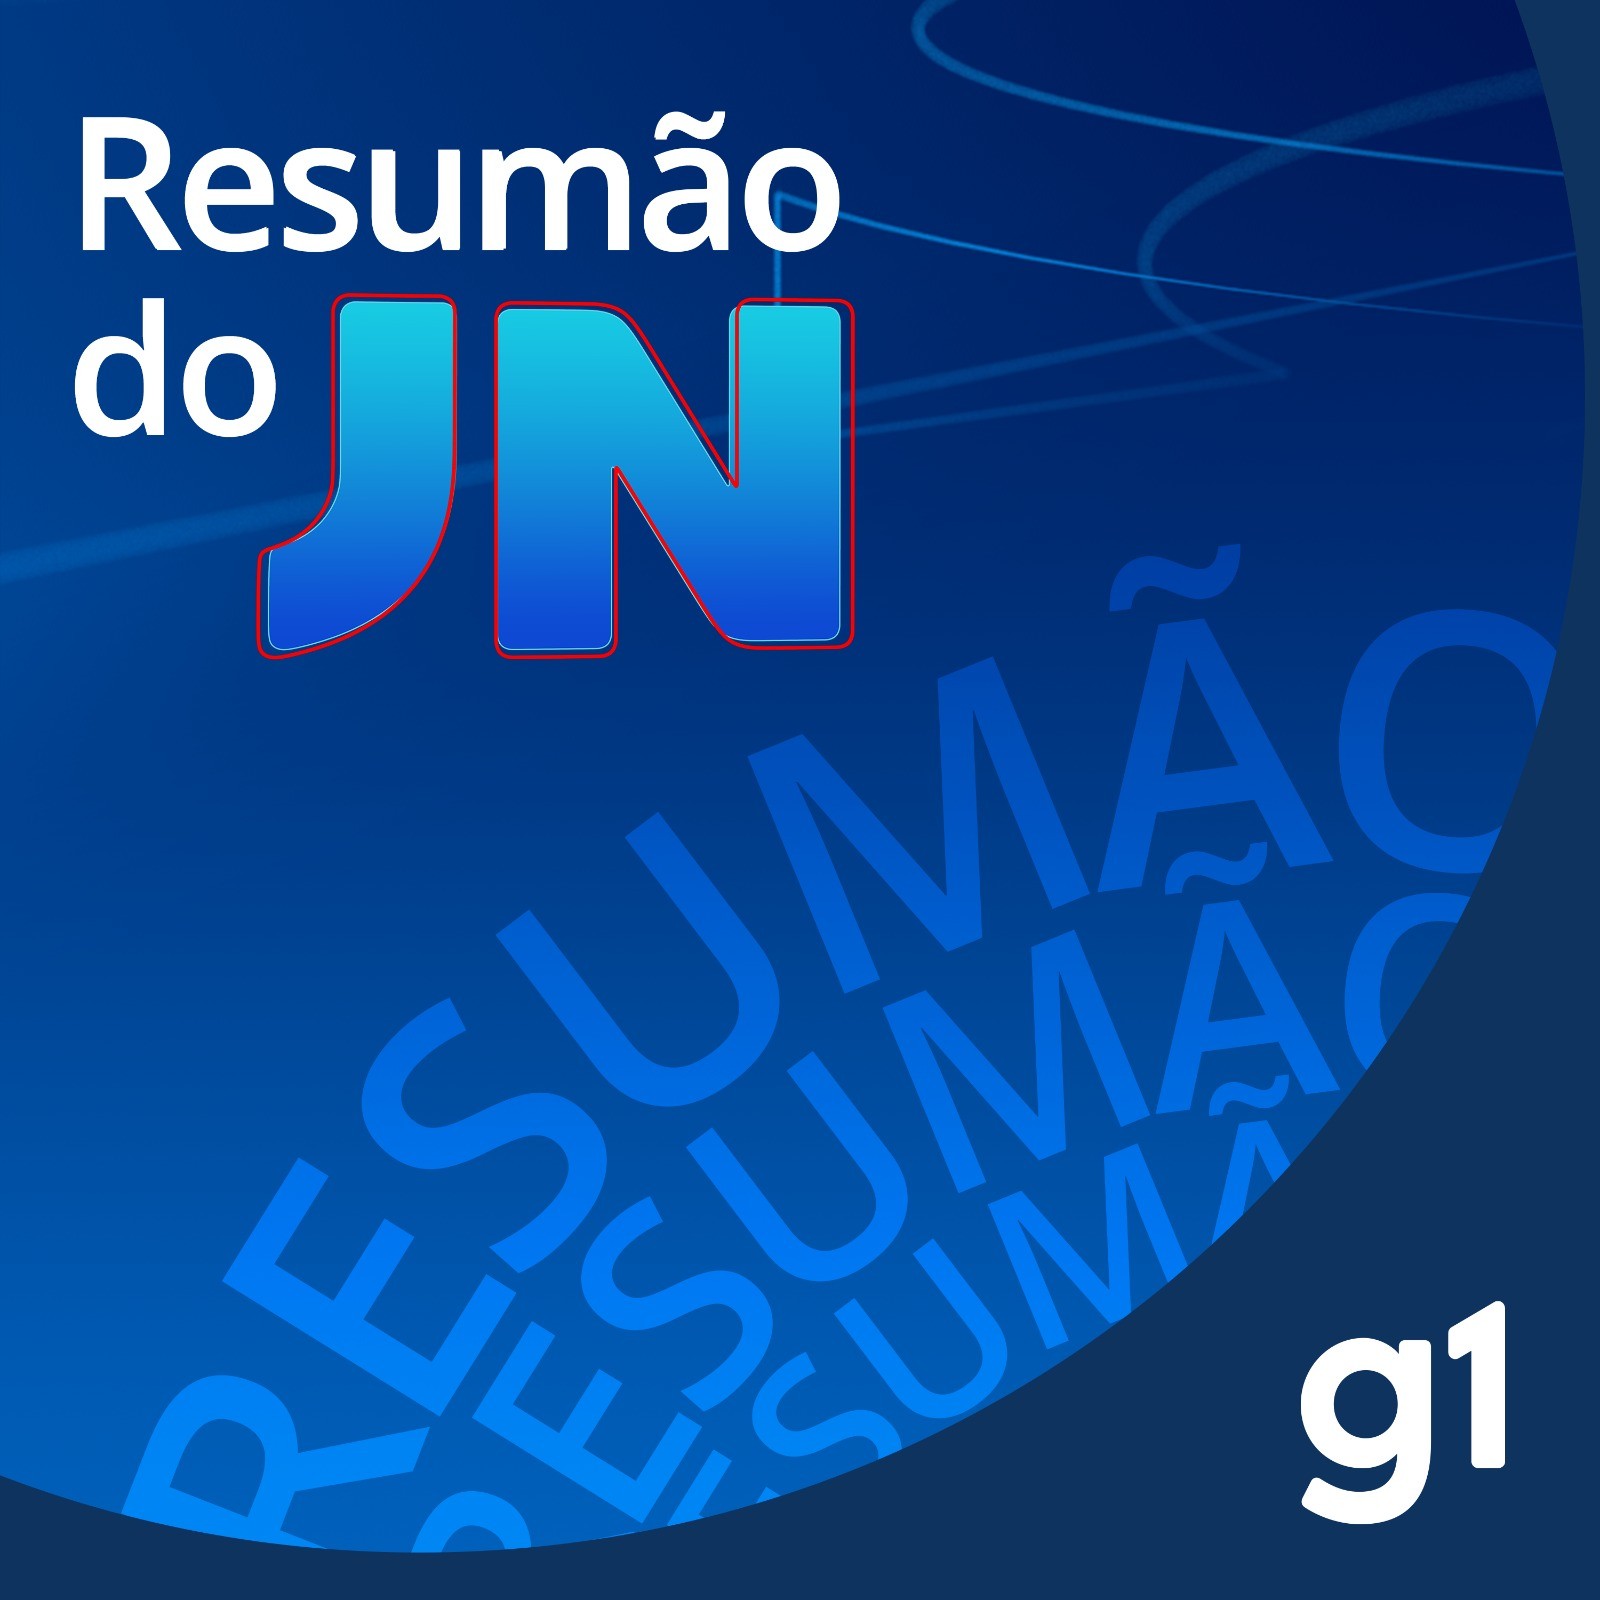 Resumão diário do JN: Bolsonaro fica em silêncio na PF, Dino toma posse como ministro do STF, e presos suspeitos de ajudar fuga de presídio federal 